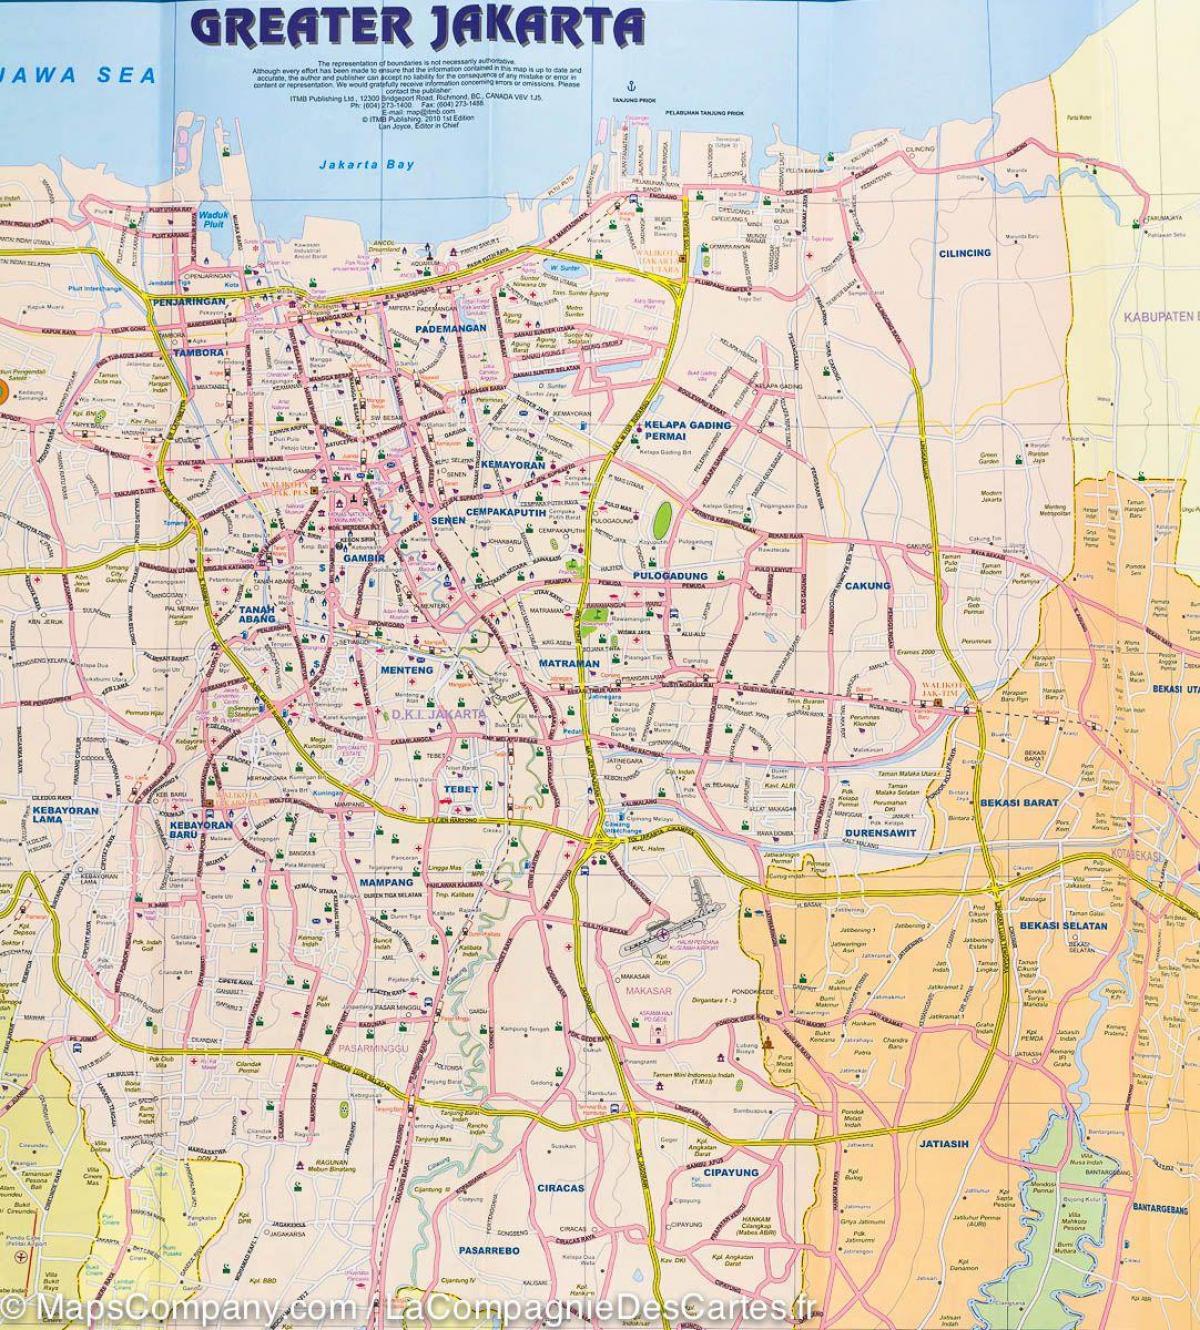 نقشہ کے جکارتہ سٹریٹ